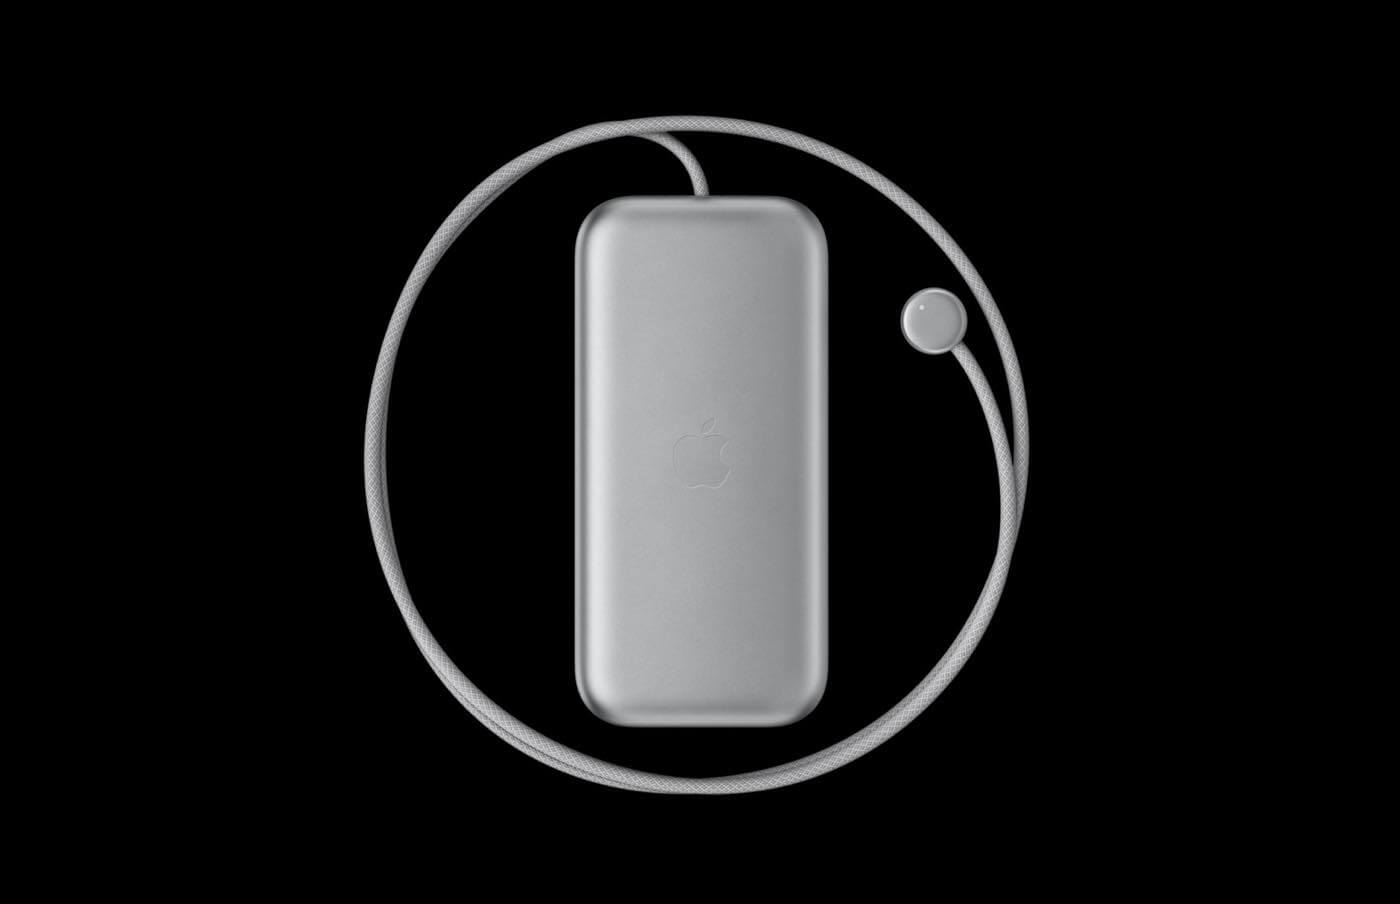 ｢Apple Vision Pro｣の外部バッテリーは最大2.5時間の2Dビデオ再生に対応